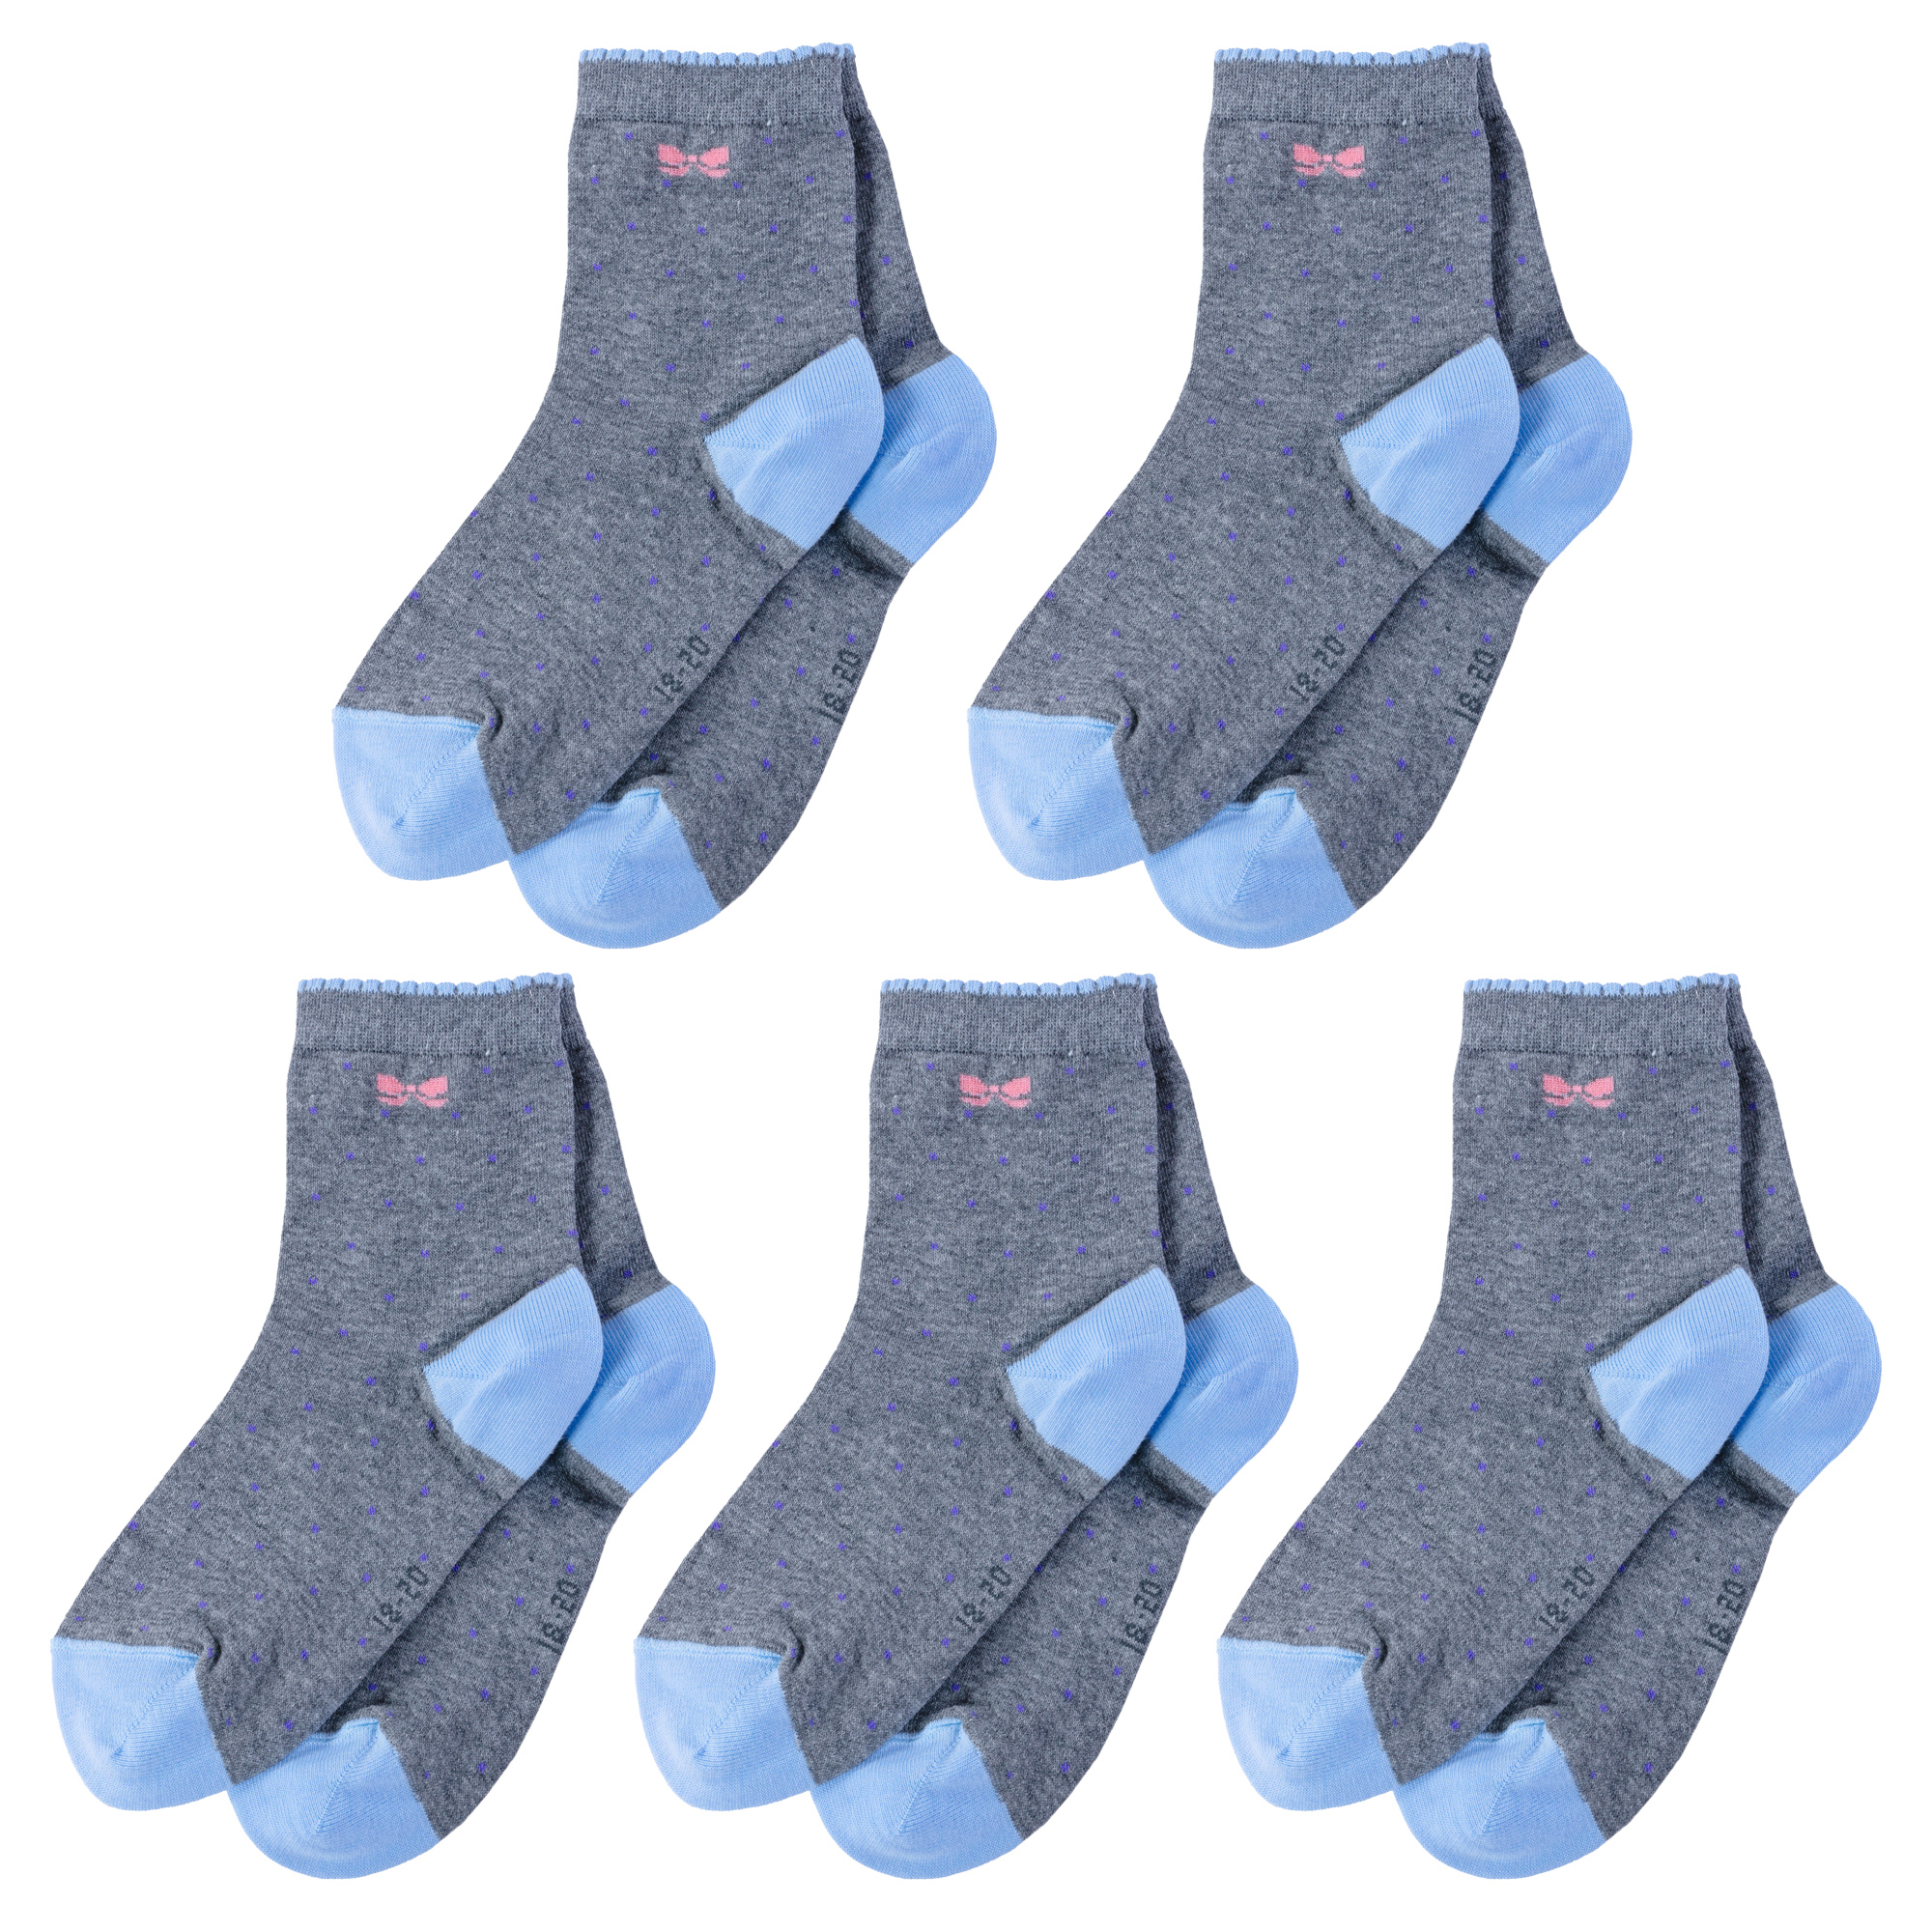 Носки детские LorenzLine 5-Л105, серый; голубой, 10-12 носки для девочек lorenzline л105 10 цв голубой розовый серый белый р 44905